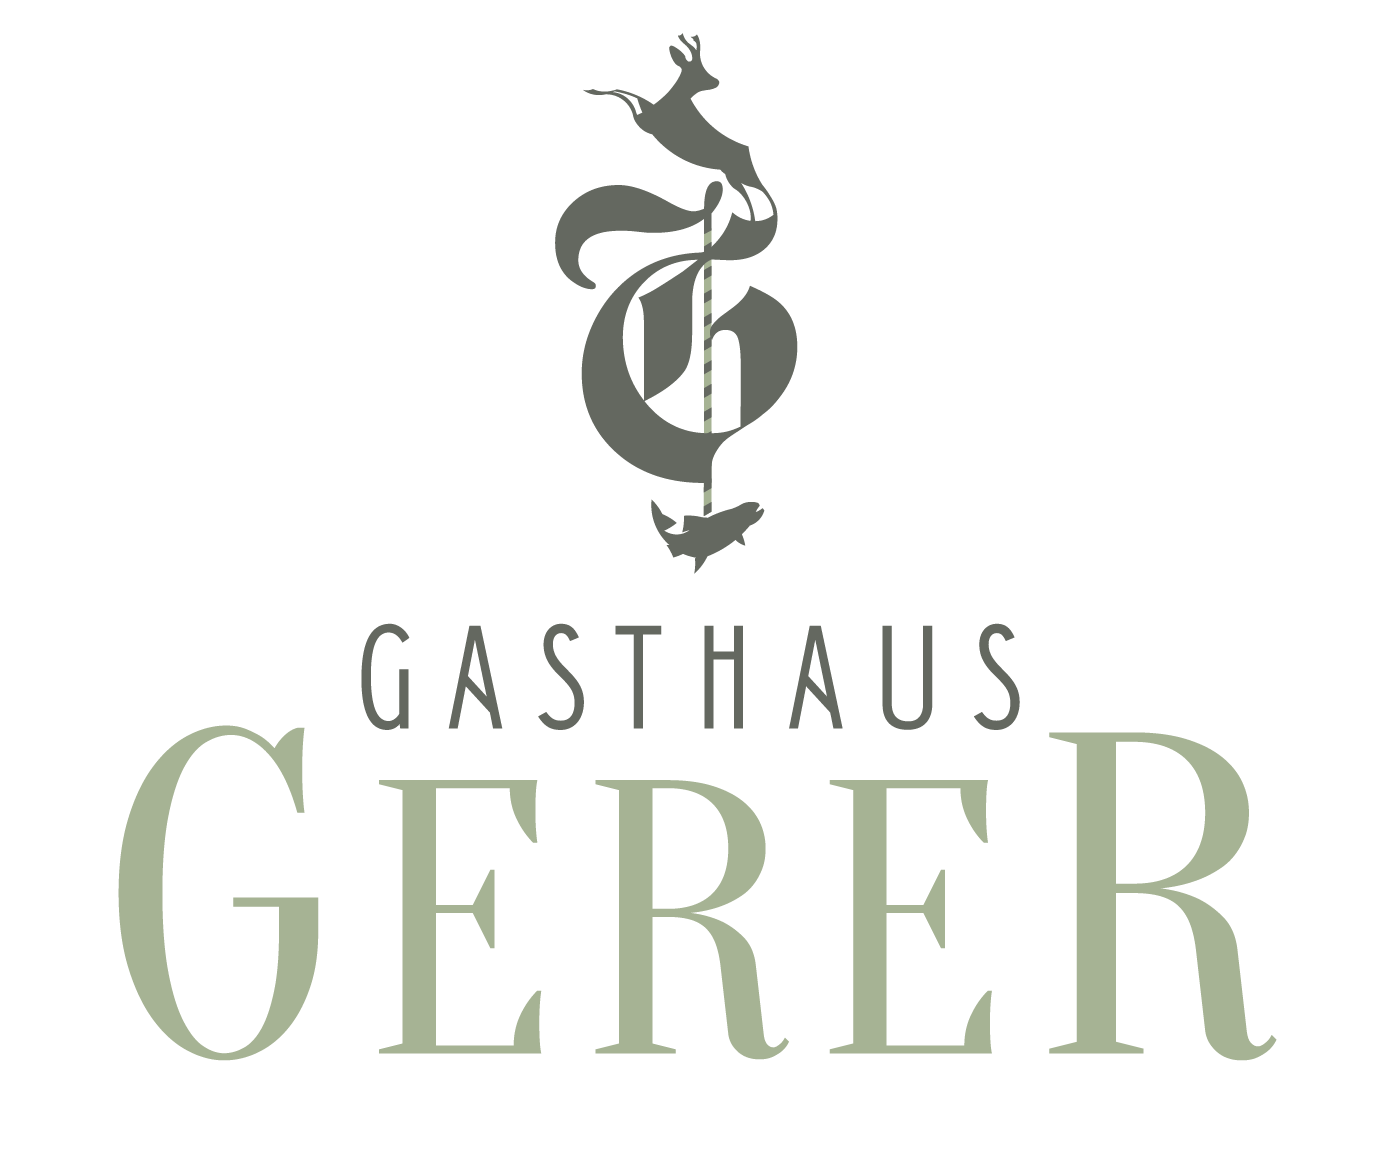 Gasthaus Gerer Logo